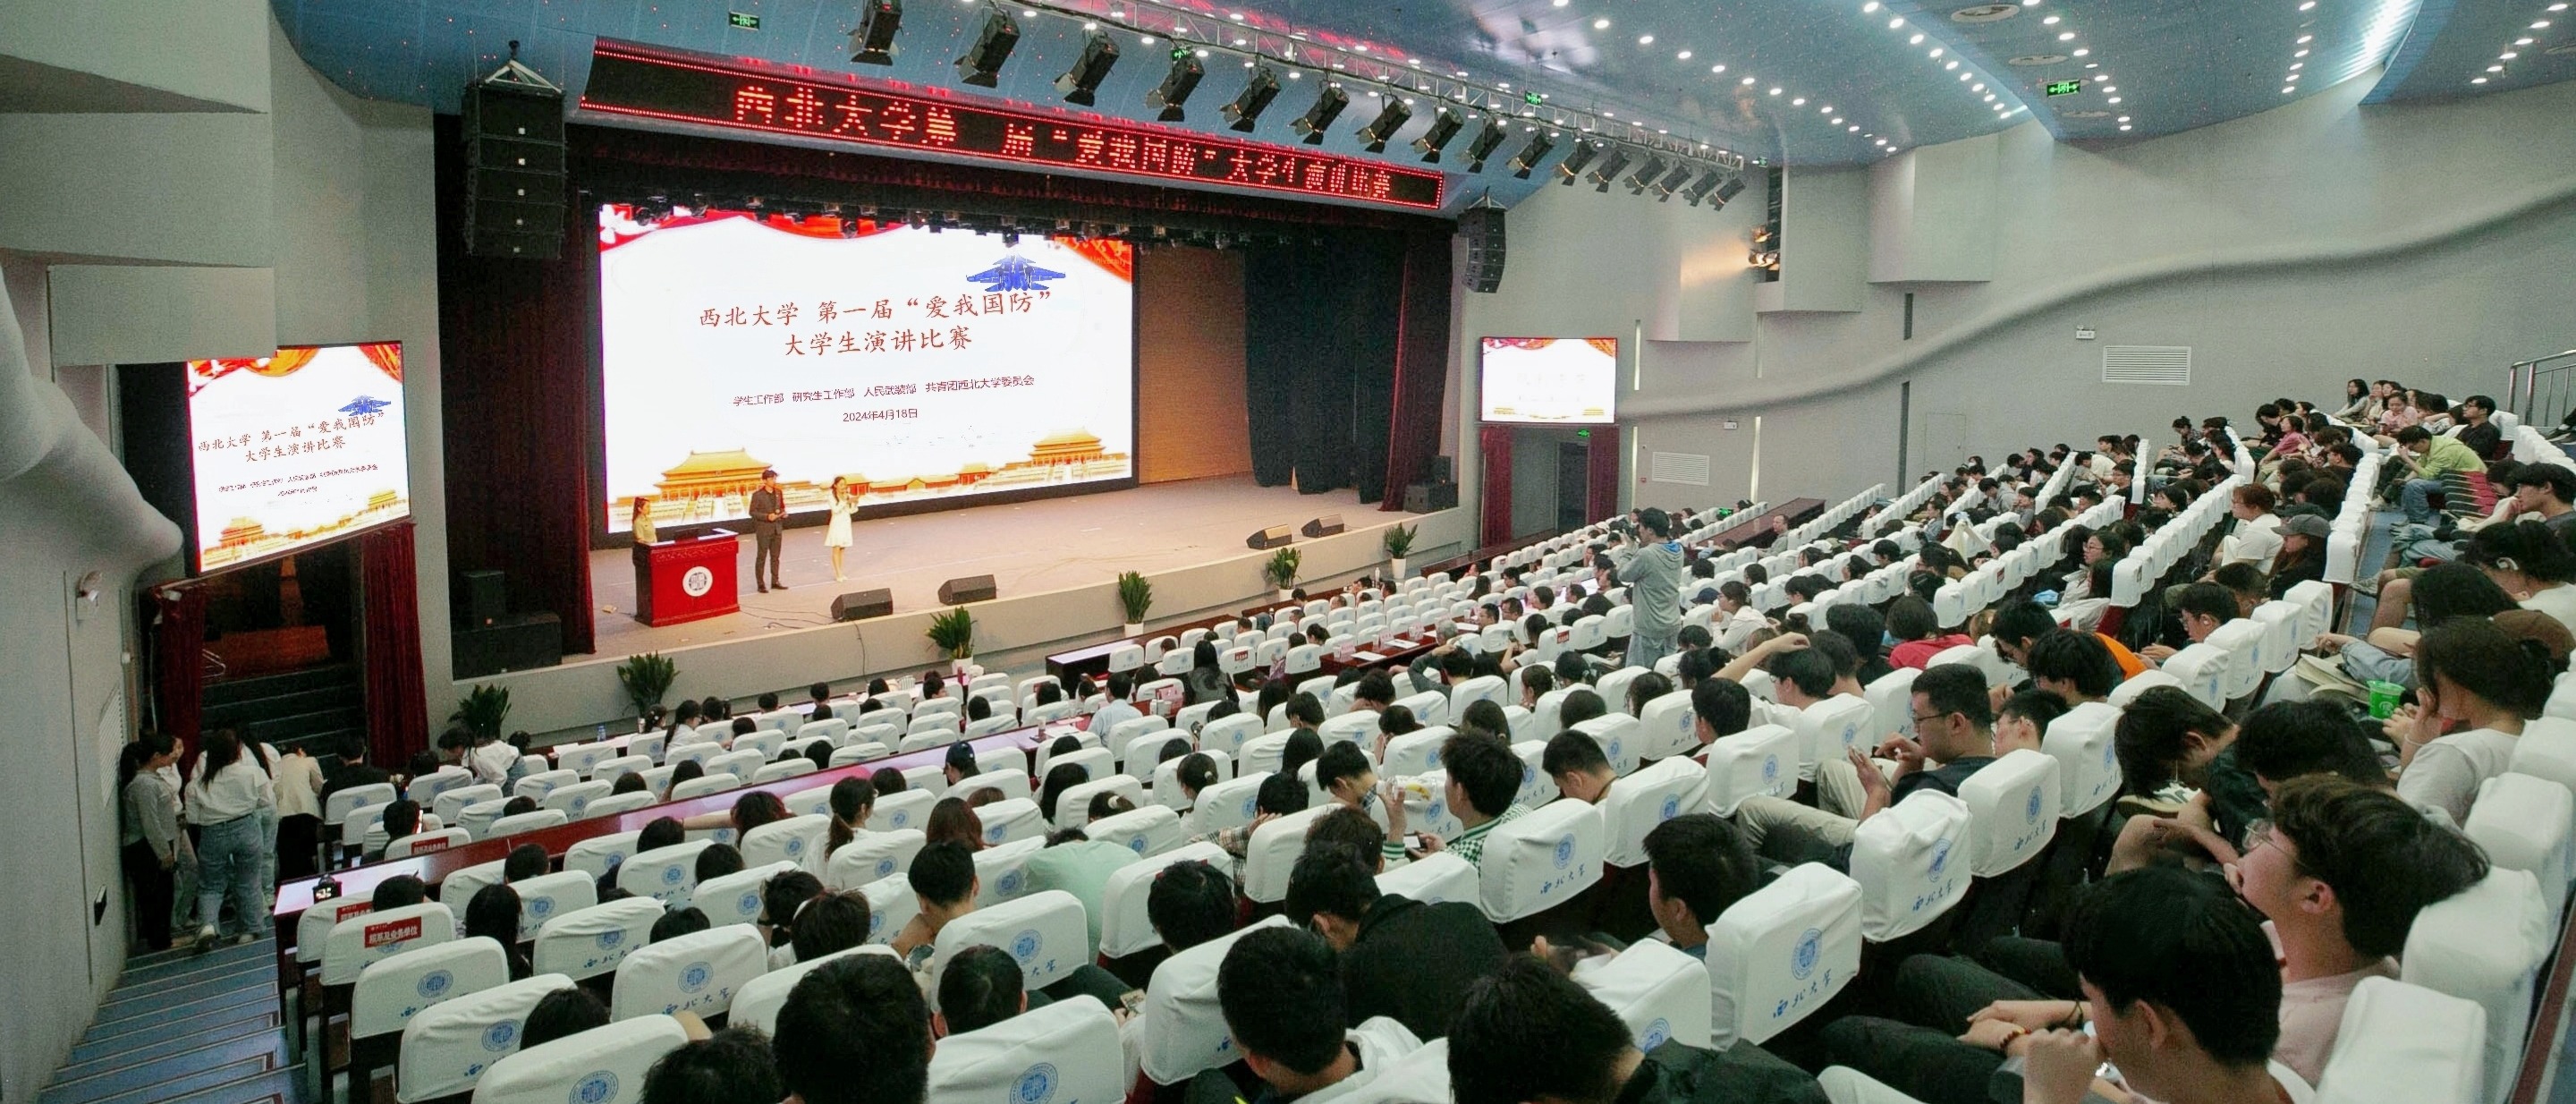 欧宝(中国)有限公司举办第一届“爱我国防”大学生演讲比赛决赛